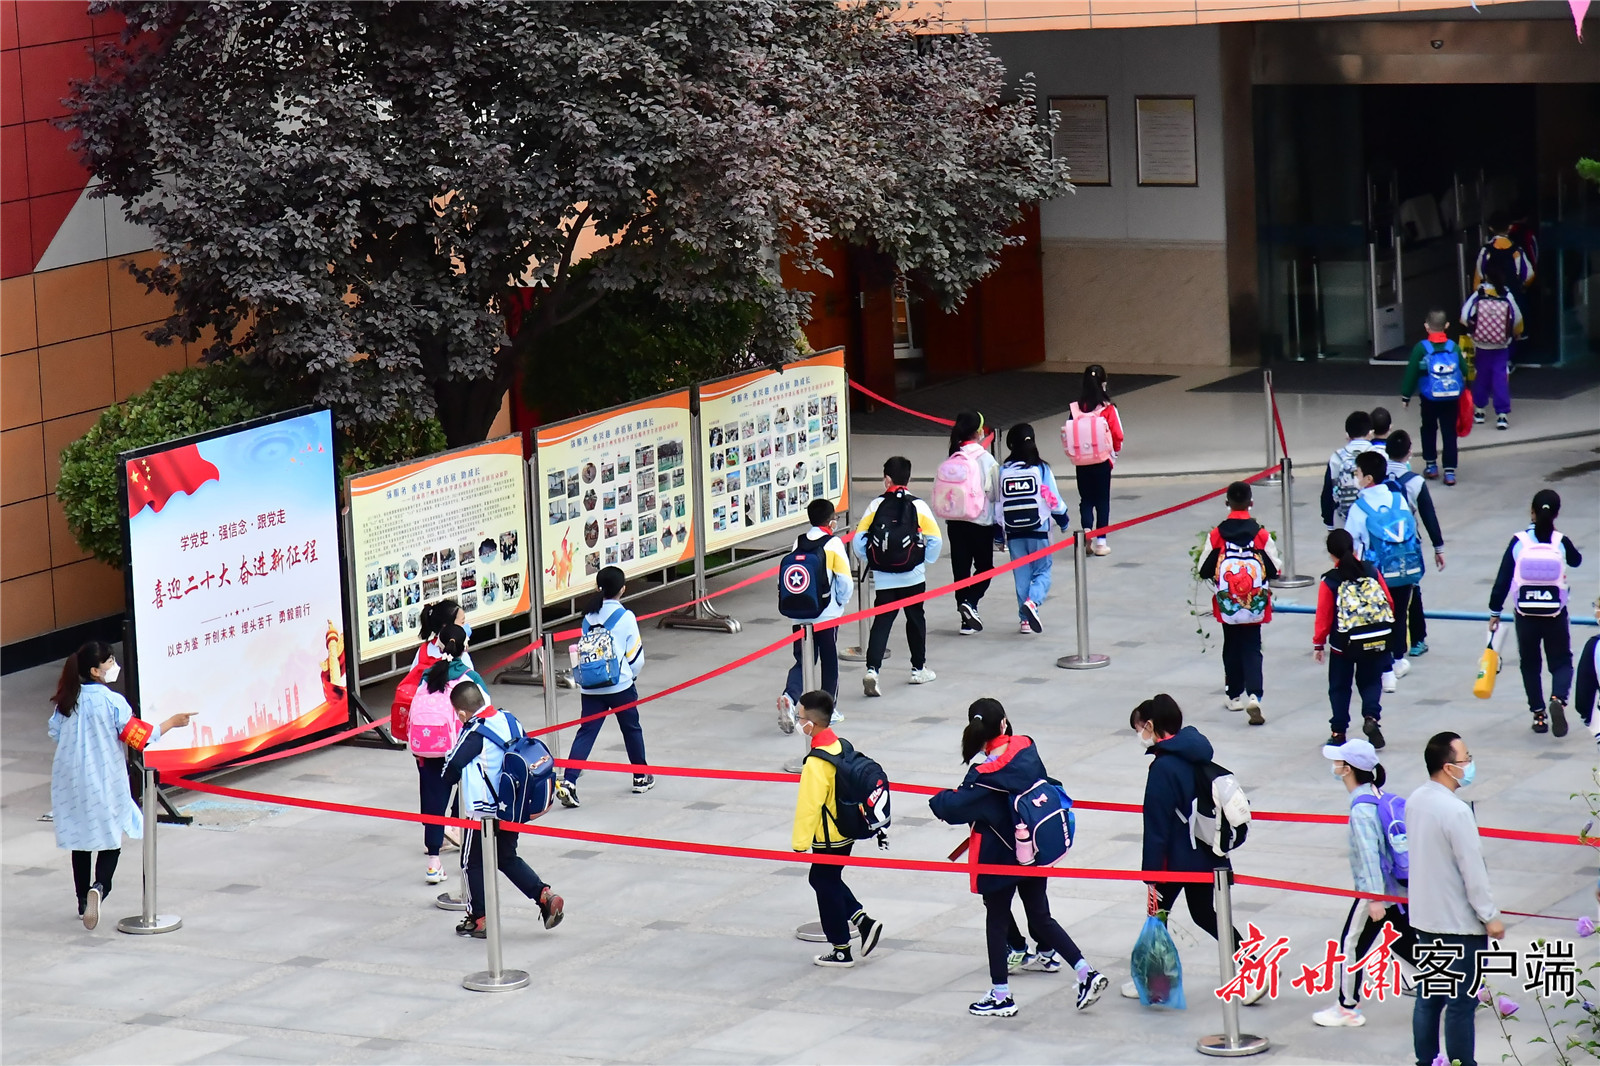 走进小学 憧憬未来 - 多彩的一天 - 杭州市德胜幼儿园